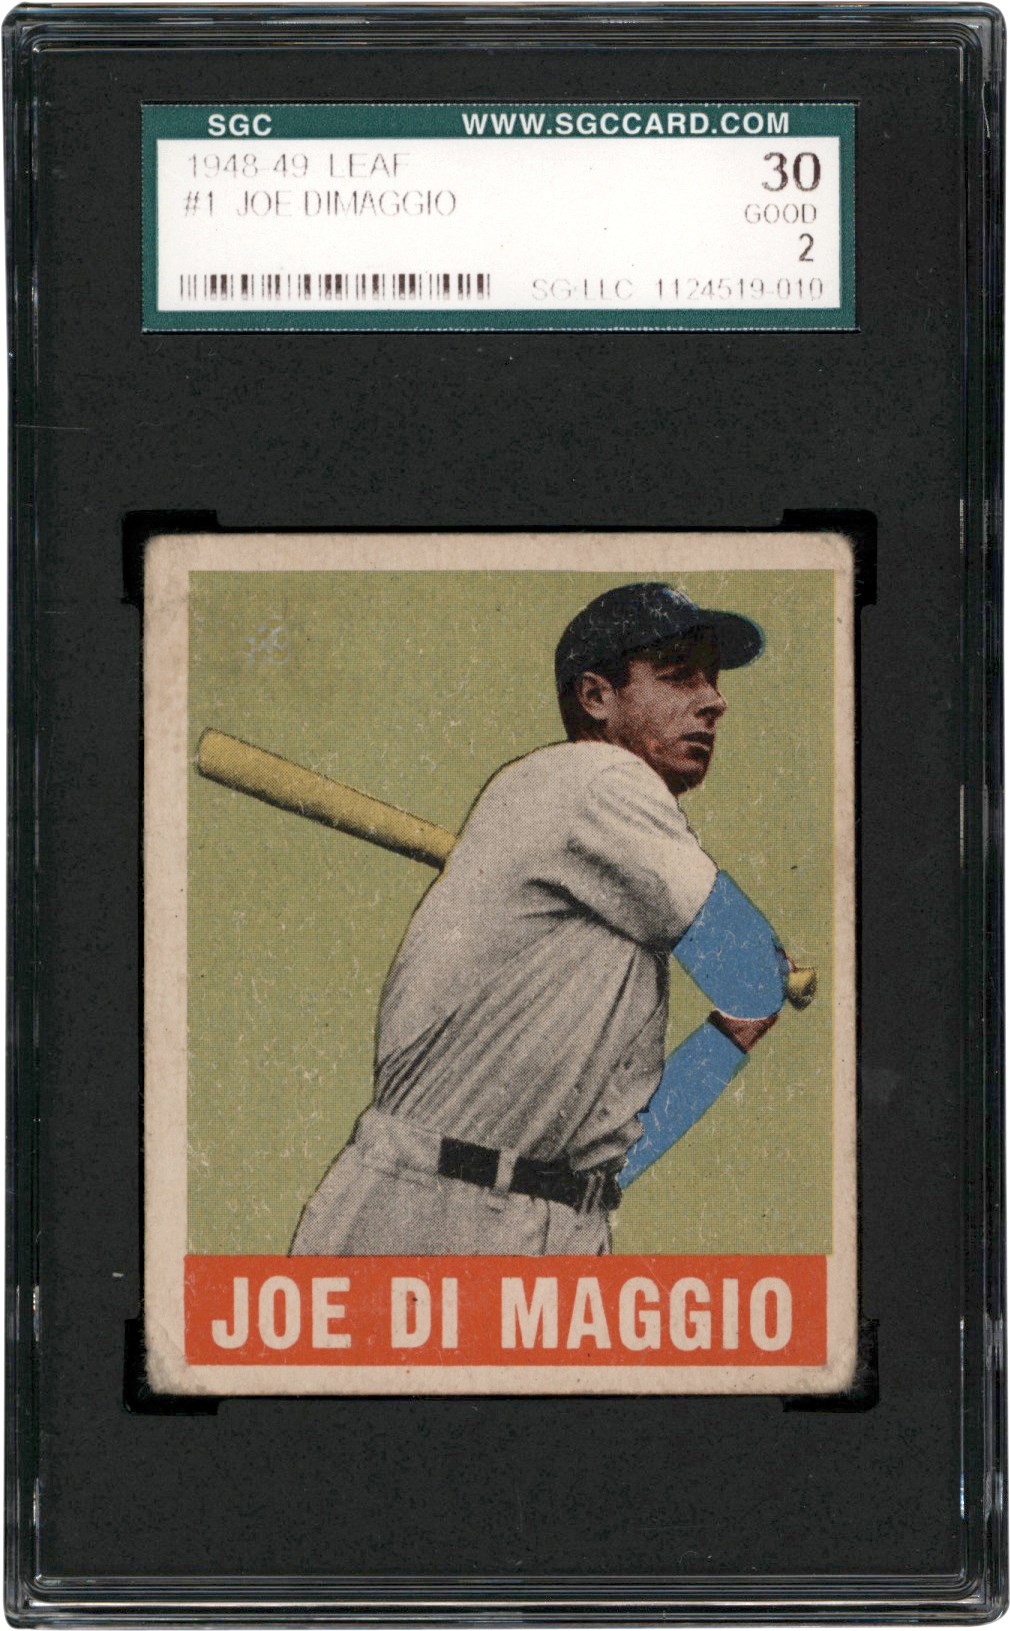 - 1948 Leaf #1 Joe DiMaggio SGC GD 2